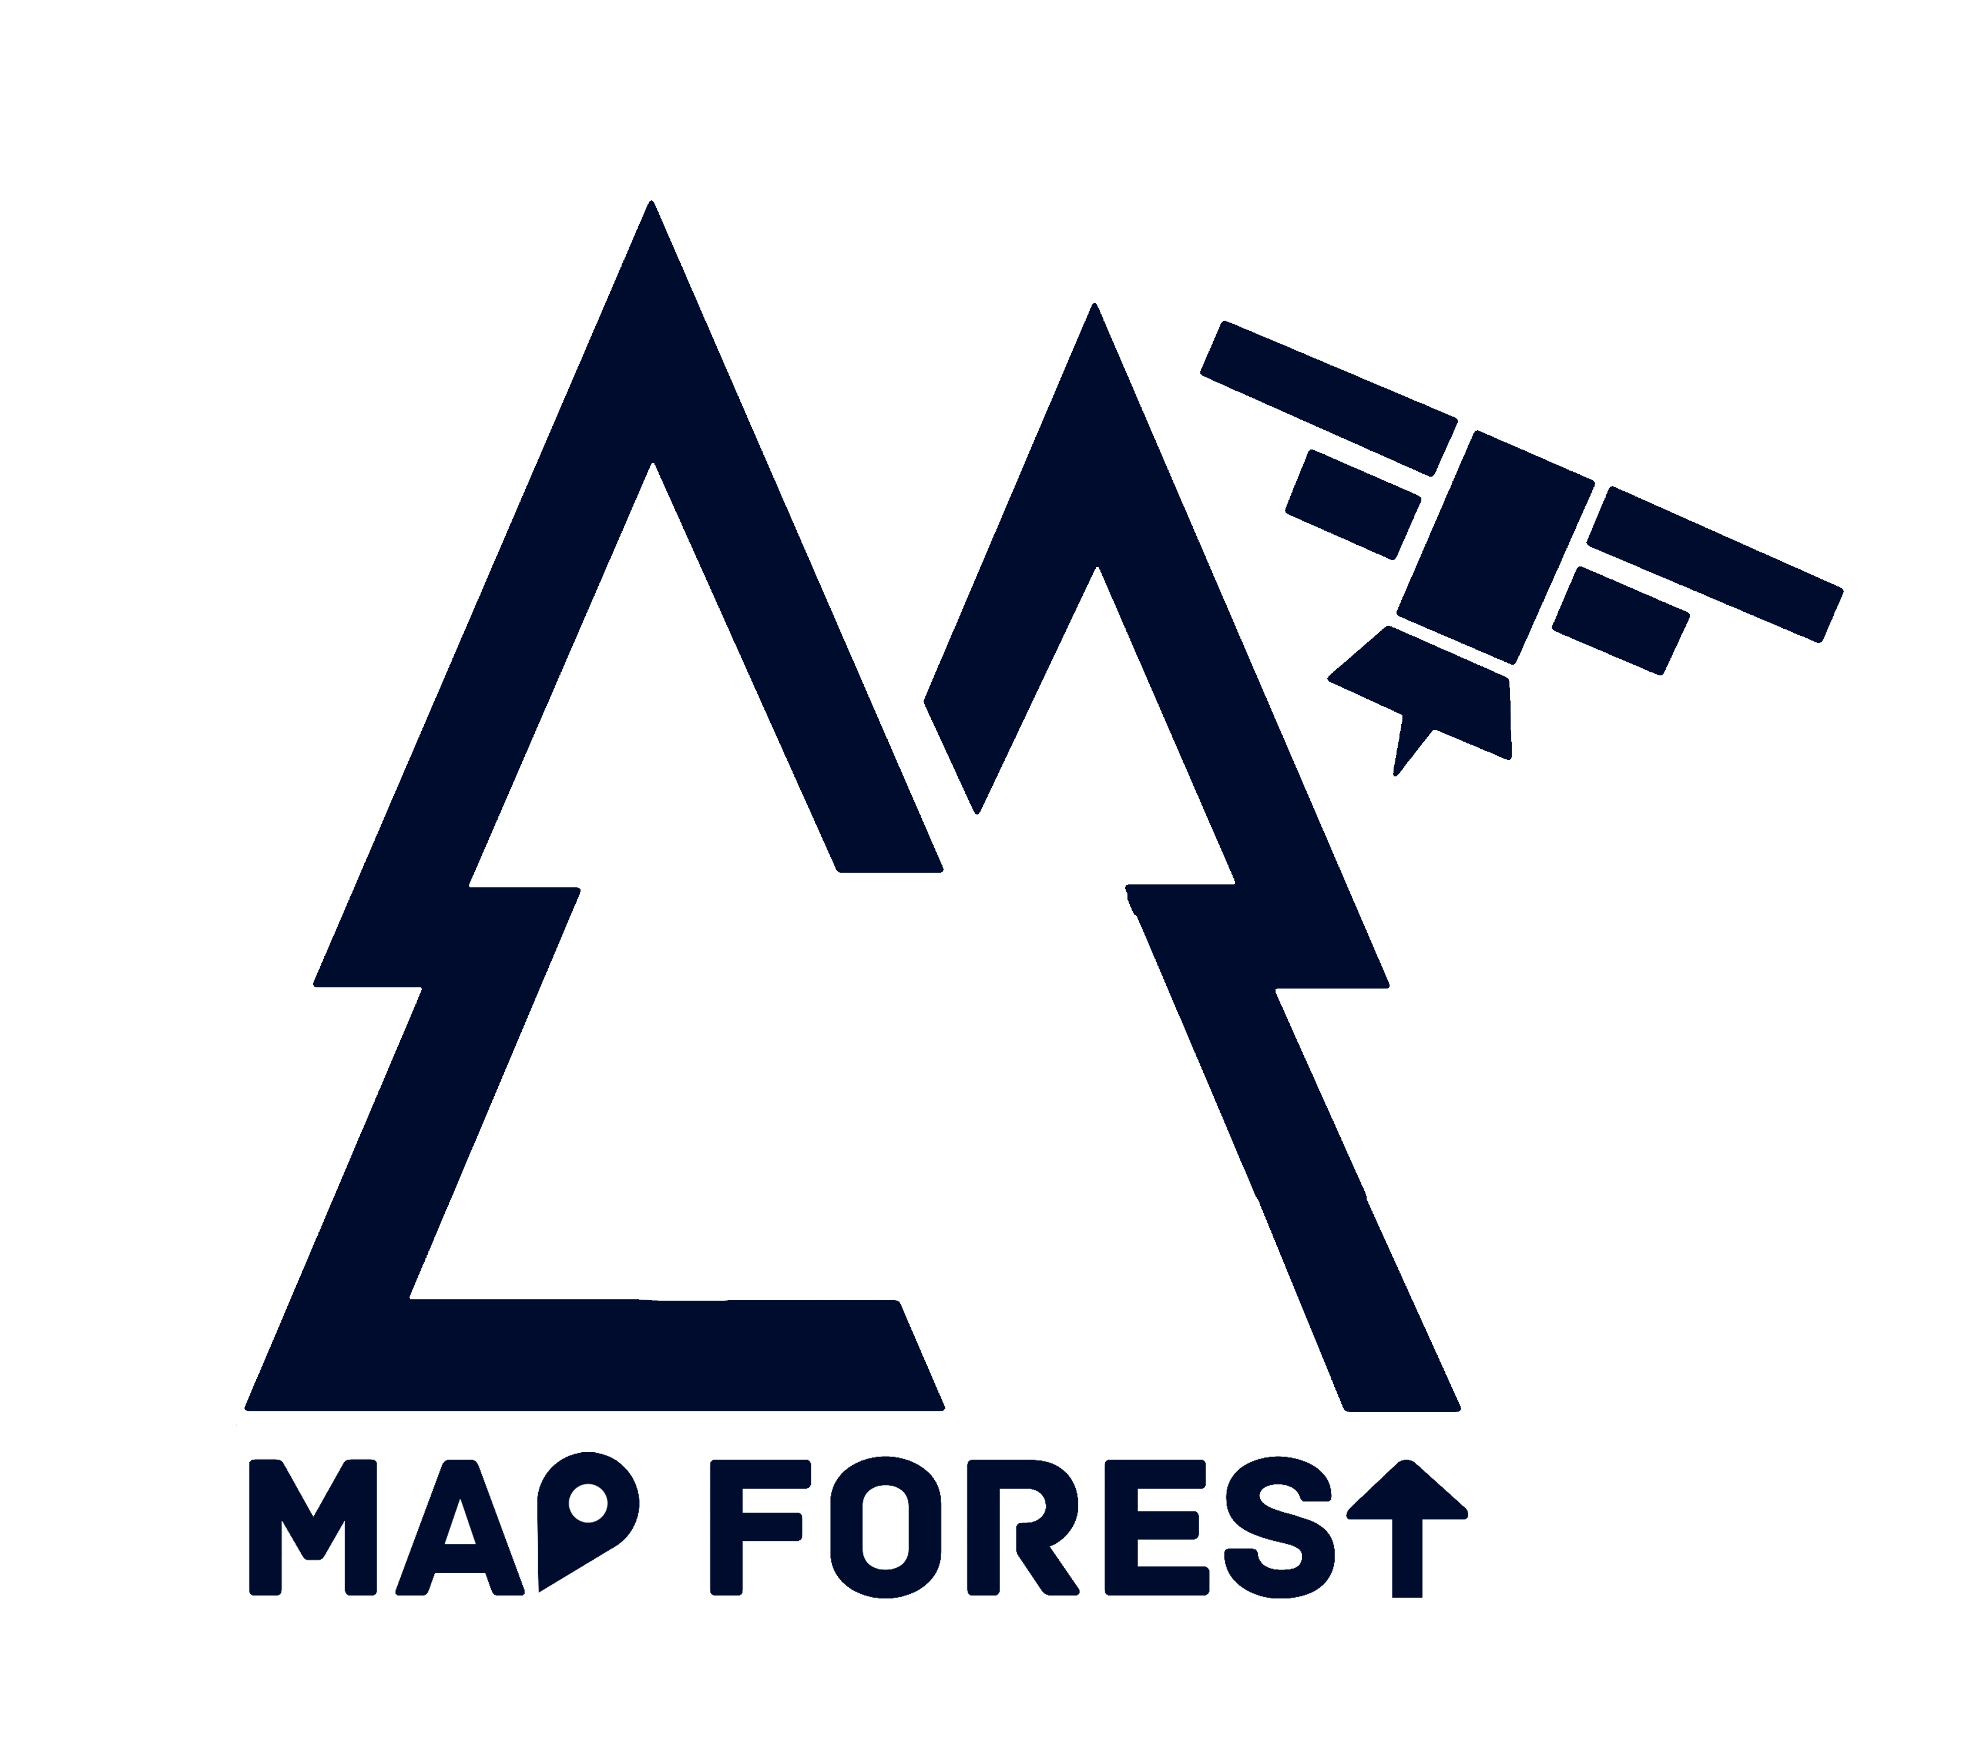 MapFOREST 4.0 - Azul (PNG) - Vertical_menor